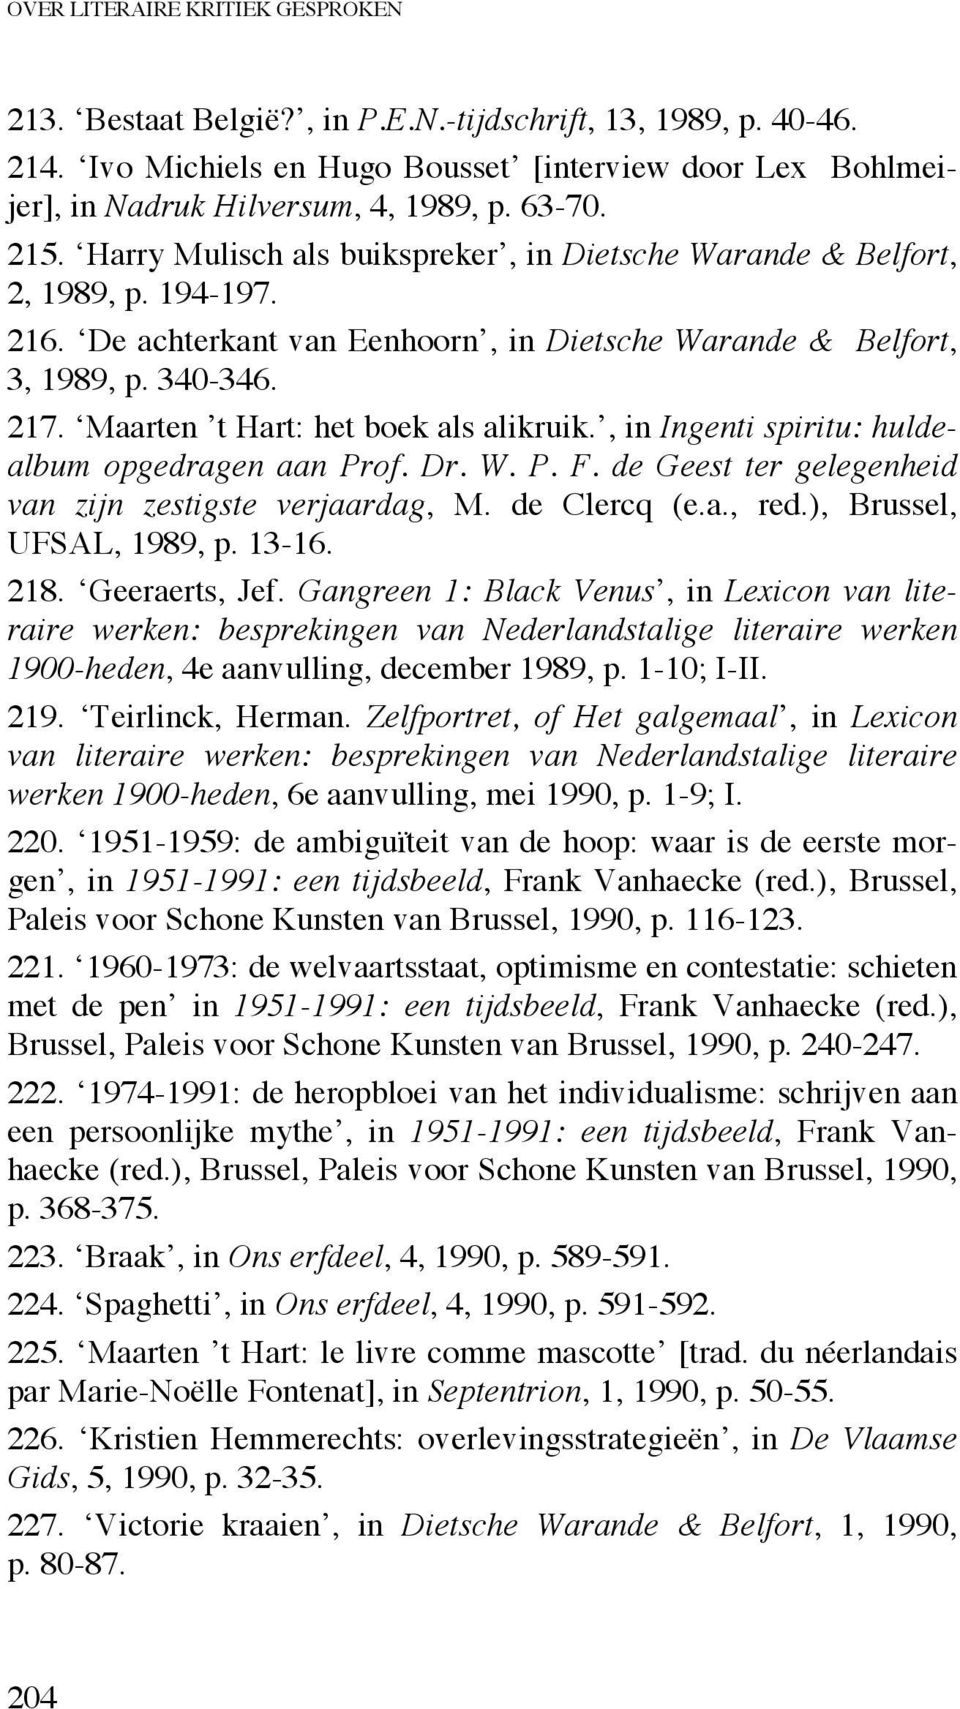 Maarten t Hart: het boek als alikruik., in Ingenti spiritu: huldealbum opgedragen aan Prof. Dr. W. P. F. de Geest ter gelegenheid van zijn zestigste verjaardag, M. de Clercq (e.a., red.